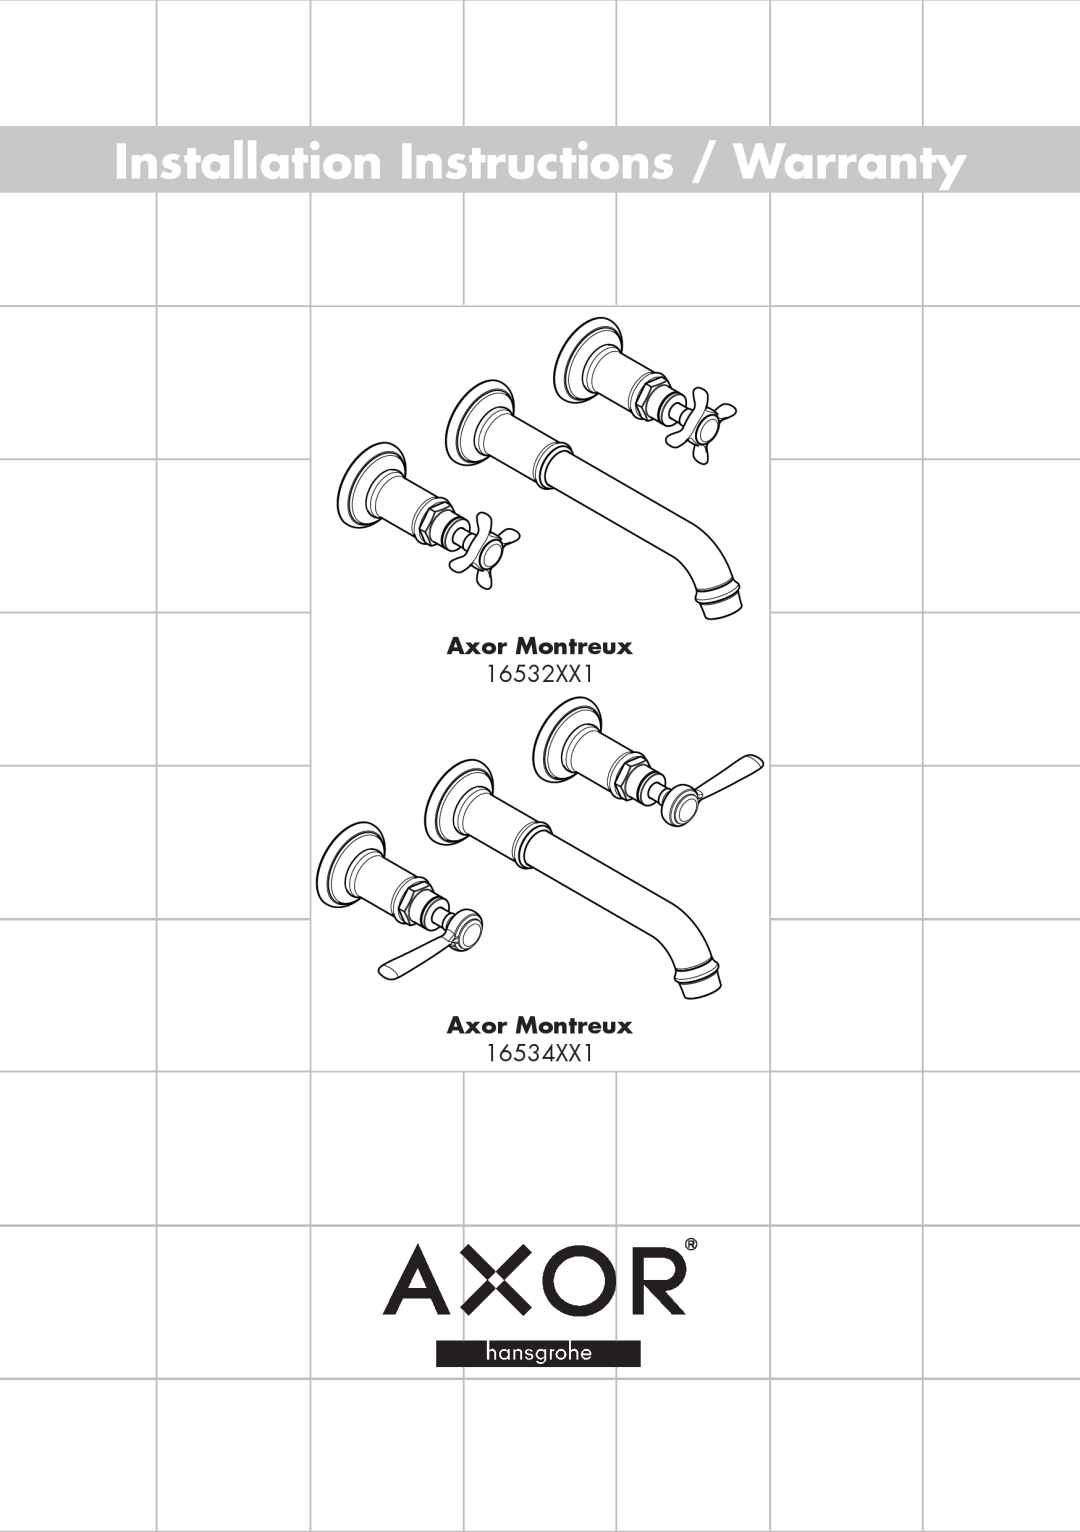 Axor 16534XX1 installation instructions Axor Montreux, Installation Instructions / Warranty 